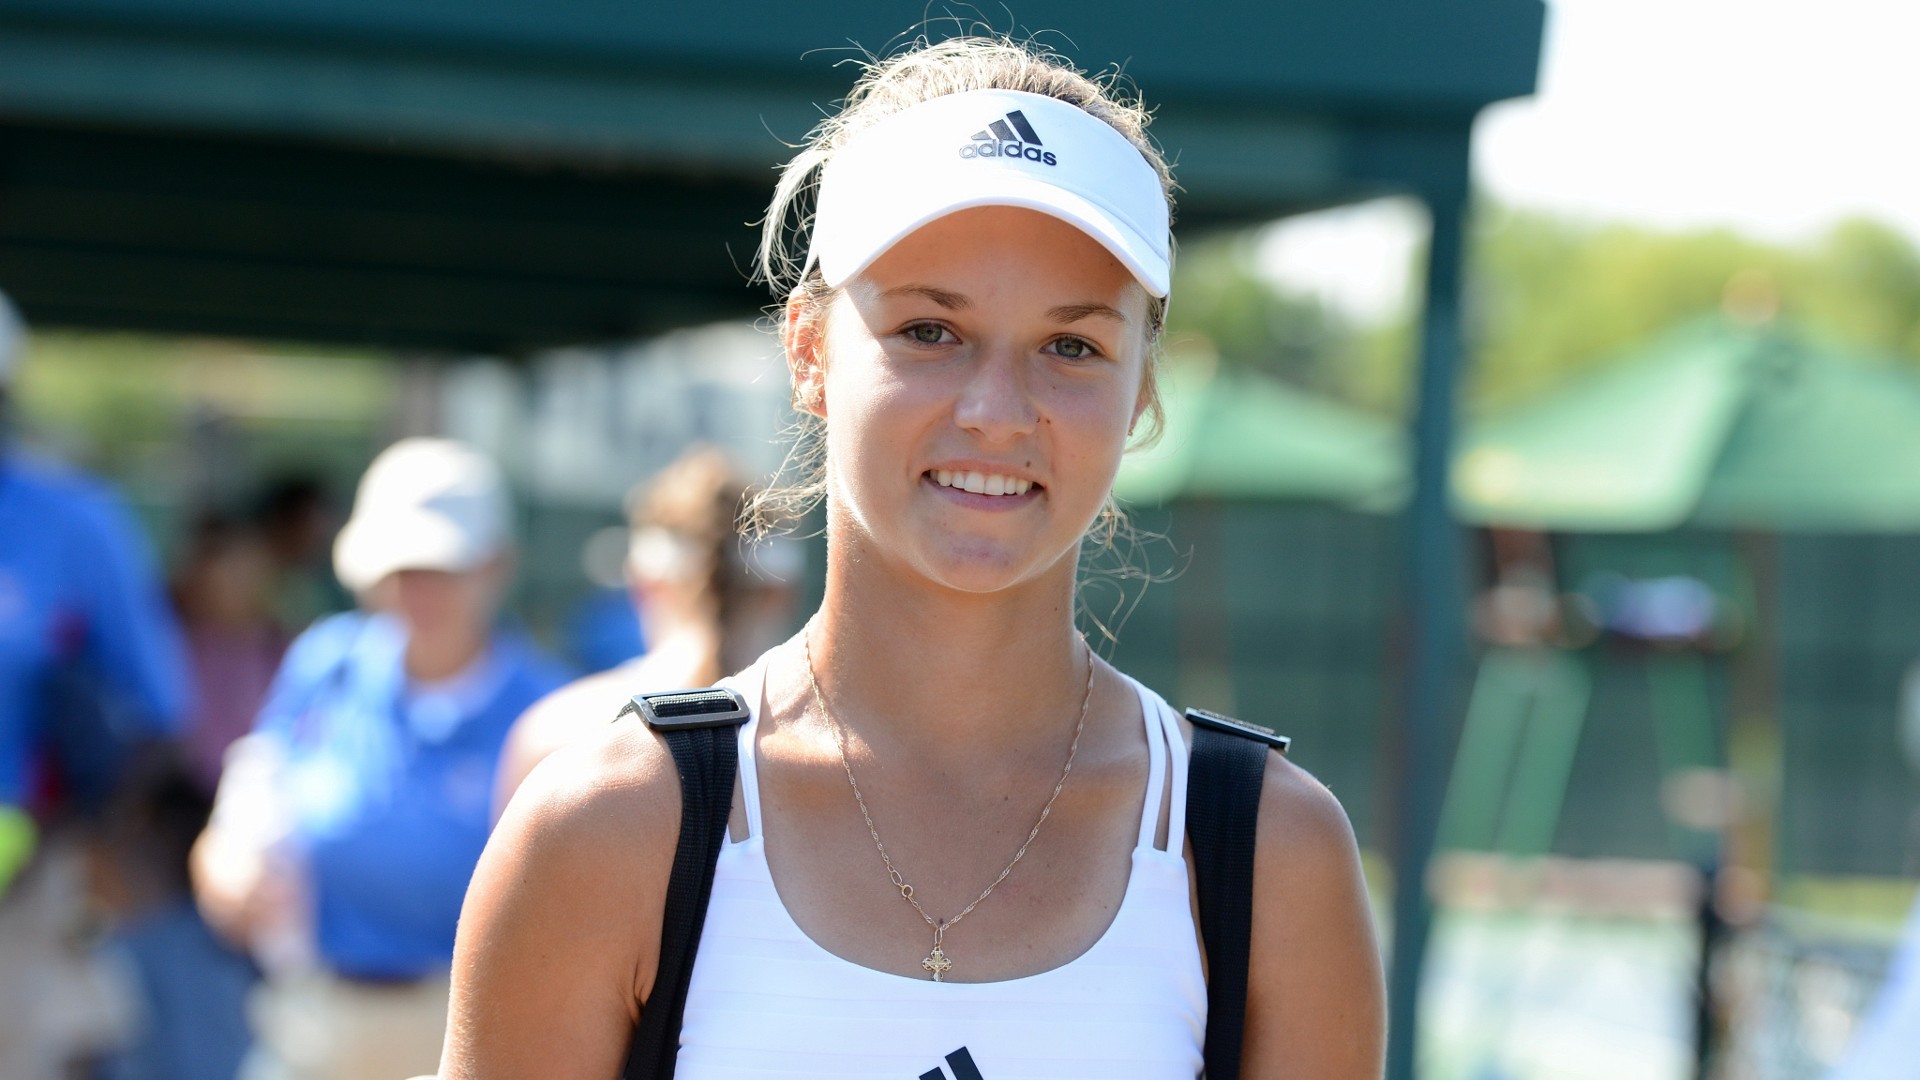 Anna Kalinskaya Women Tennis Player Blue Eyes Sportswear Blonde Looking At Viewer Smiling 1920x1080